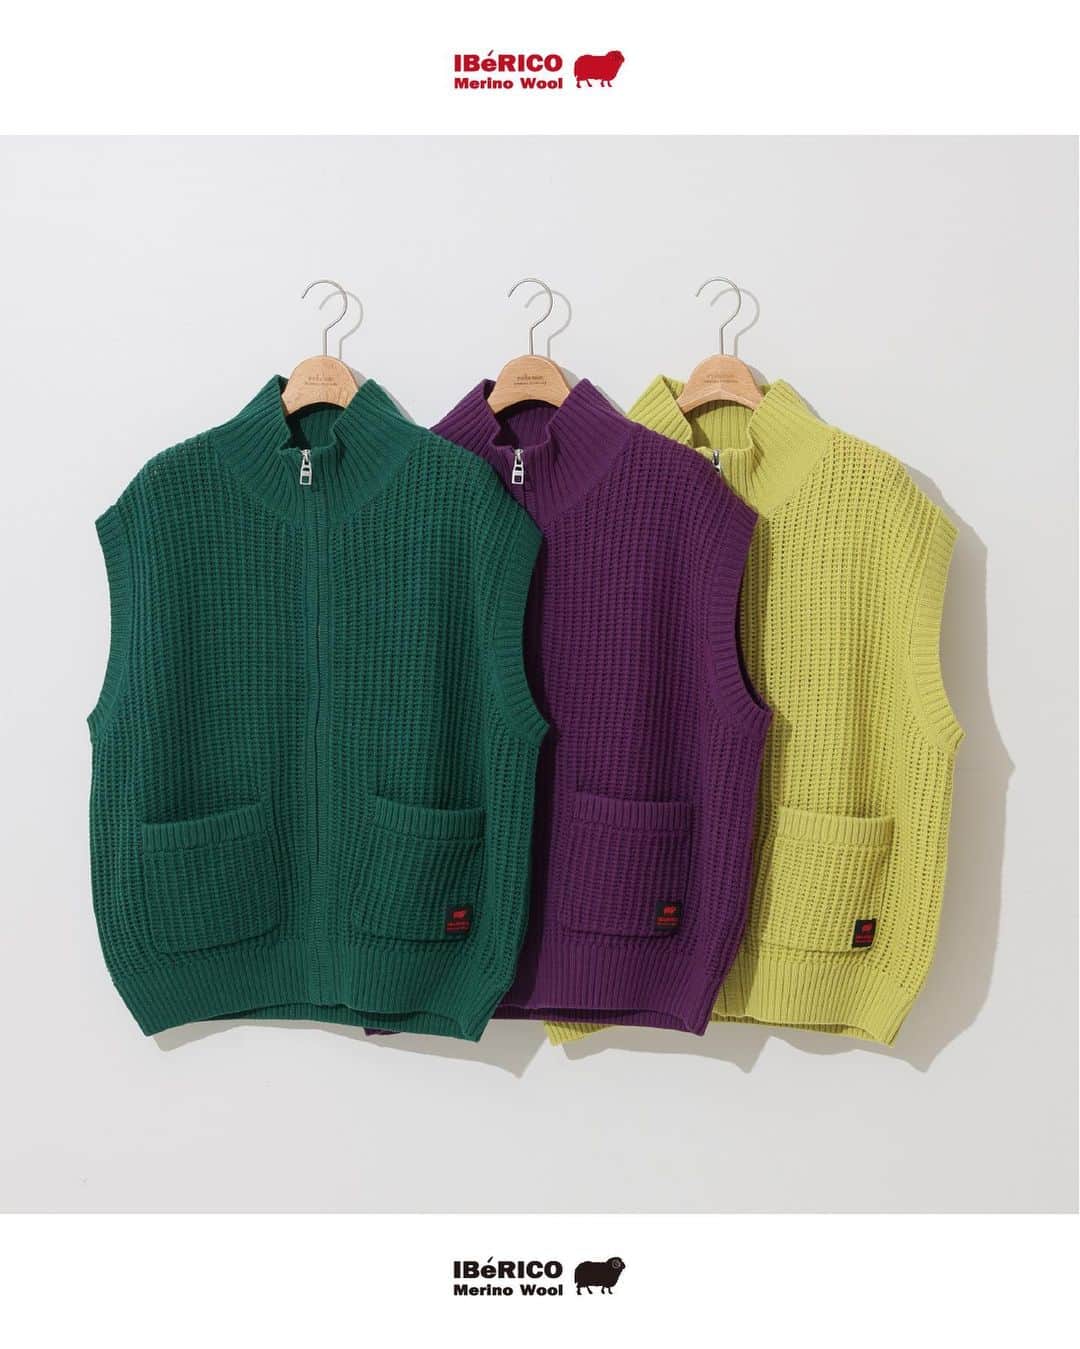 JOURNAL STANDARD relumeのインスタグラム：「IBERICO MERINO drivers knit vest  秋冬の新作コレクション「IBERICO MERINO/イベリコメリノ」が登場！  スペイン・イベリコ地方原産のWOOL原料を使用したニットシリーズ。 スペインより原料を輸入して、日本で丁寧に紡績・染色。定番のハミルトンウールシリーズとは違い、弾力のある生地感とビビッドなカラー展開が特徴です。  クルーネックのプルオーバータイプと、ジップが特徴なドライバーズニットとベストの３タイプからお選びいただけます。  No.23080464010030 IBERICO MERINO WOOL ドライバーズニットベスト ¥13,200  No.23080464011030 BERICO MERINO WOOL ドライバーズニット ¥18,700  No.23080464000030 IBERICO MERINO WOOL メッシュクルーネックニット ¥14,300  #IEBRICOMERINO #イベリコメリノ #driversknit #ドライバーズニット #2023aw #journalstandardrelume  #ジャーナルスタンダードレリューム」